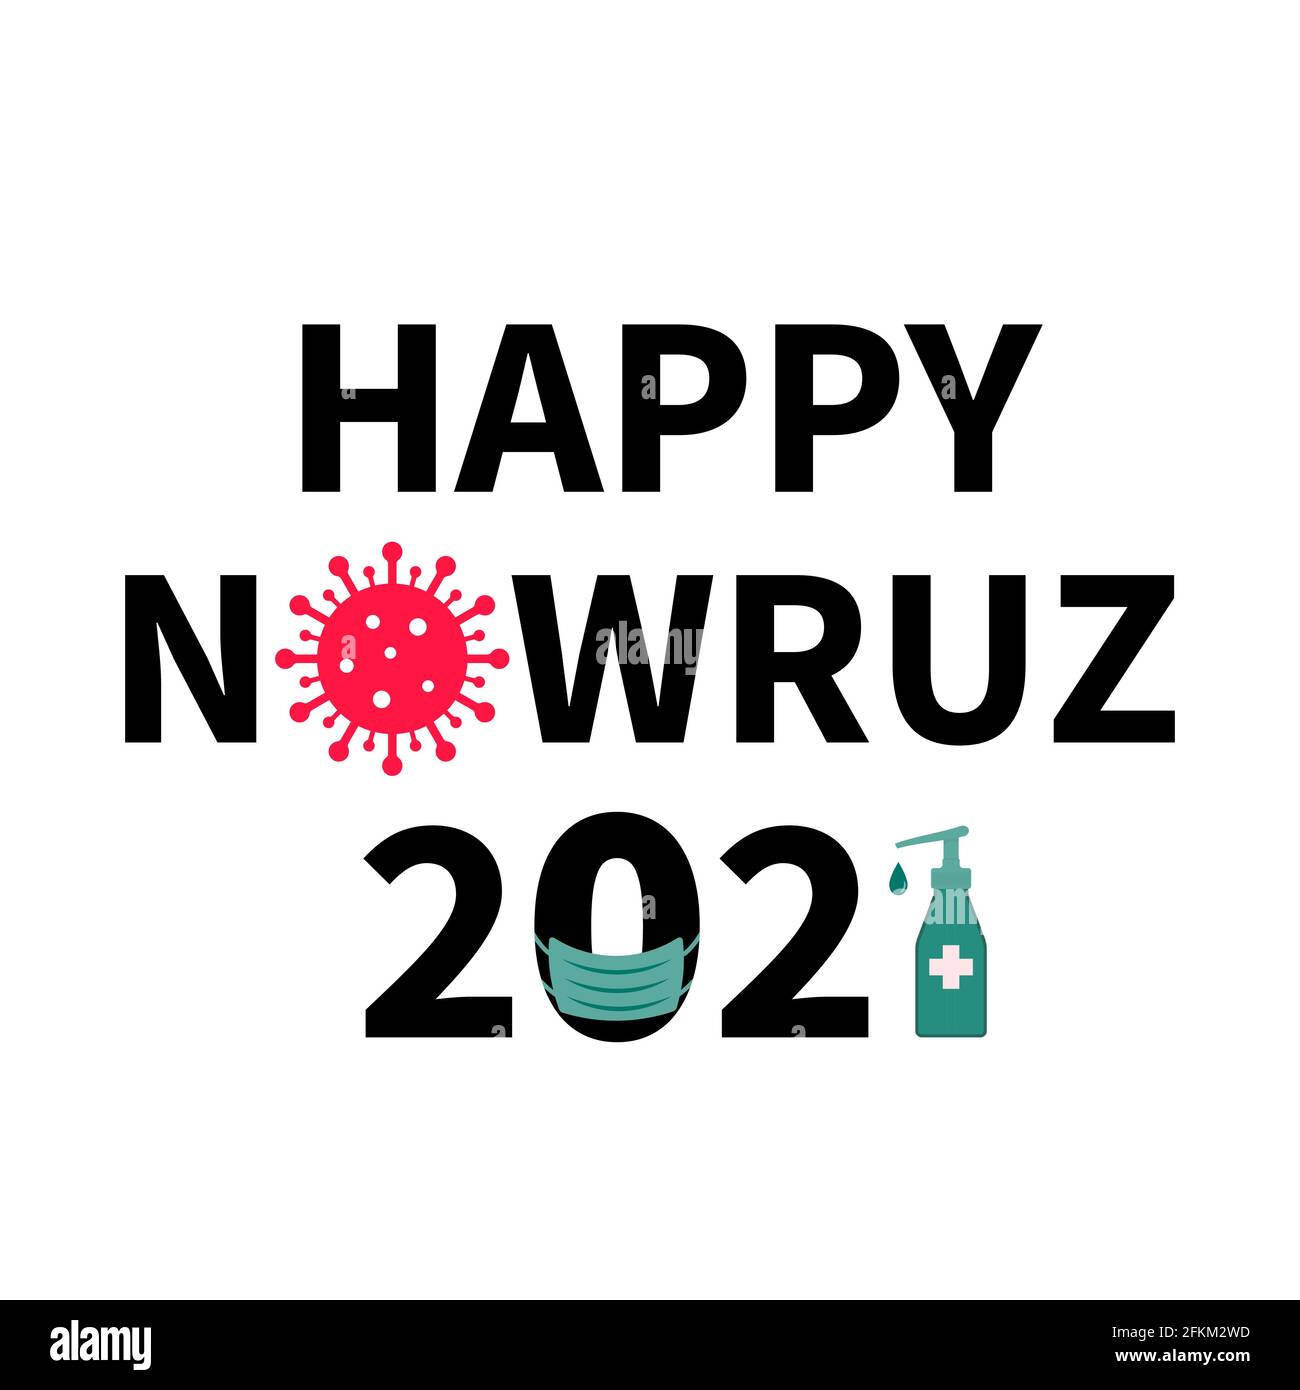 Happy Nowruz 2021 Typografie-Poster. Iranisches oder persisches Neujahr. Covid-19 Pandemiekonzept. Vektor für Grußkarte, Banner, Poster, Flyer, etc. Stock Vektor